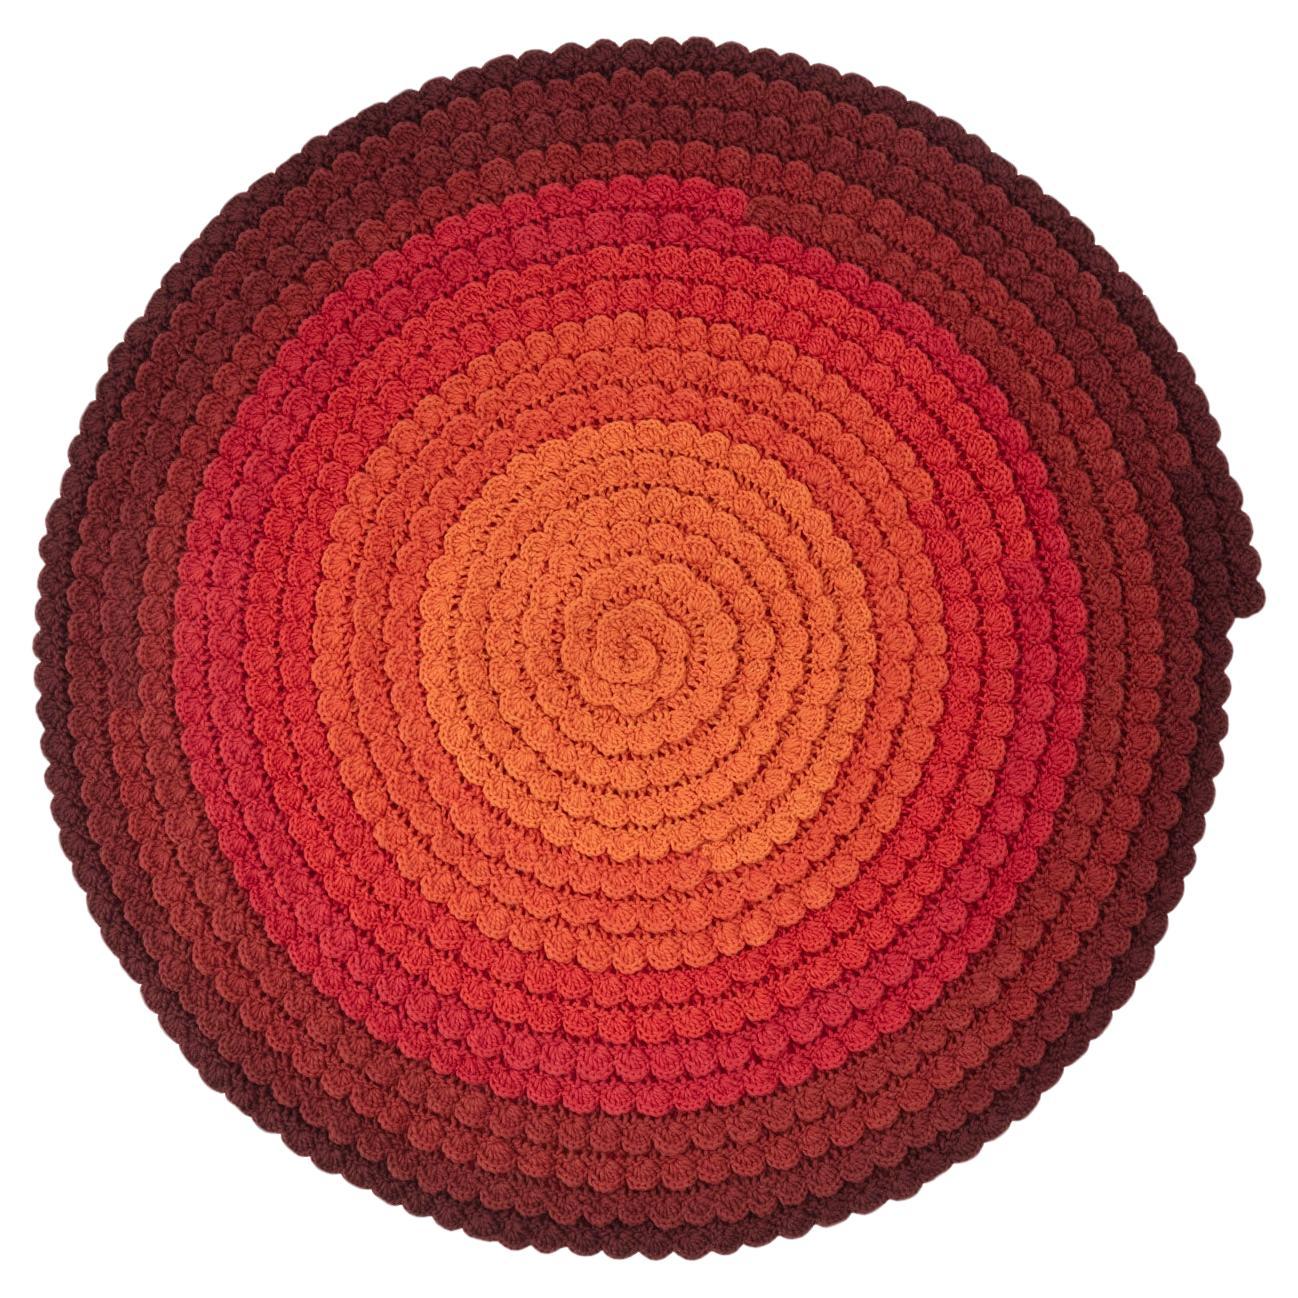 cc-tapis SWIRL AUTUMN handgefertigter Teppich von Univers Uchronia, handgefertigt